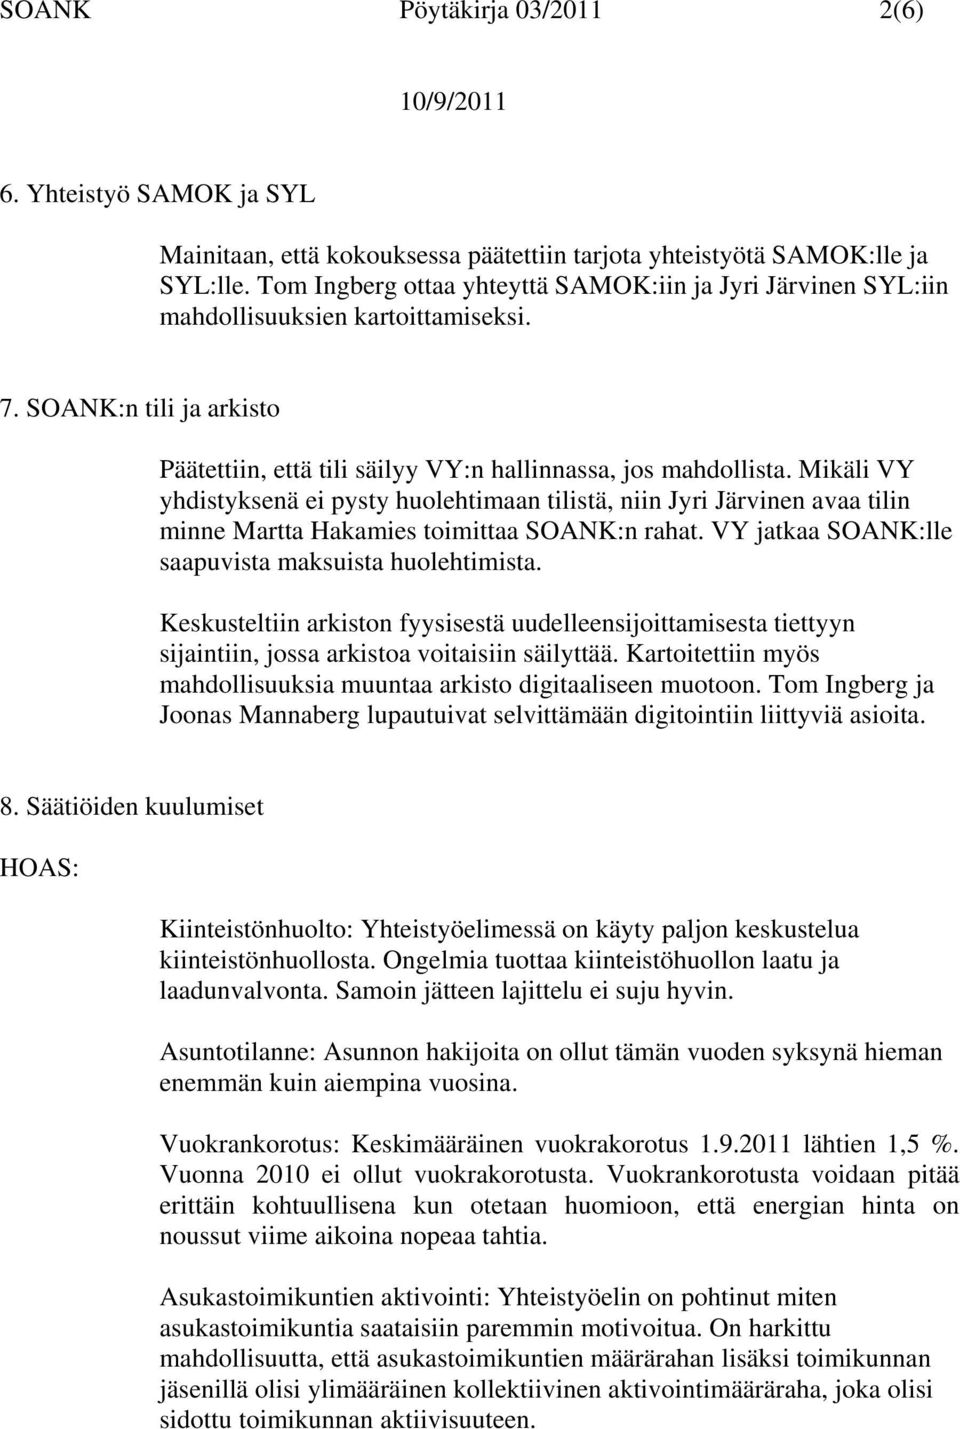 Mikäli VY yhdistyksenä ei pysty huolehtimaan tilistä, niin Jyri Järvinen avaa tilin minne Martta Hakamies toimittaa SOANK:n rahat. VY jatkaa SOANK:lle saapuvista maksuista huolehtimista.